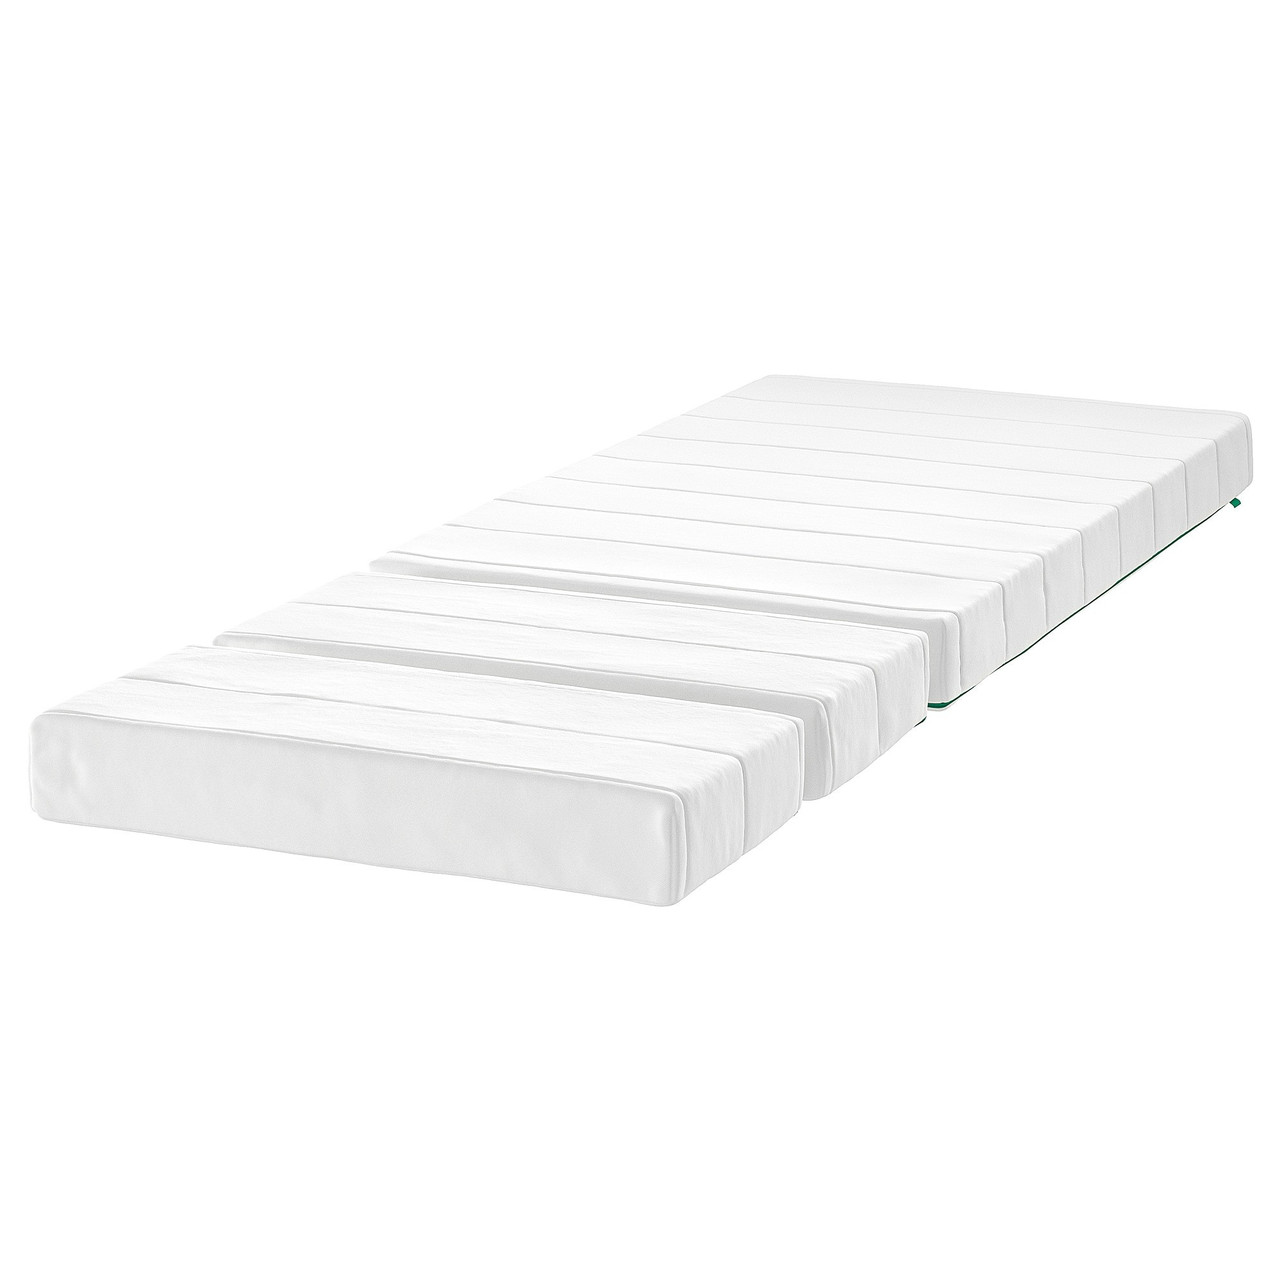 Матрас д/раздвижной кровати 80х130-200 ИННЕРЛИГ пружинный ИКЕА, IKEA